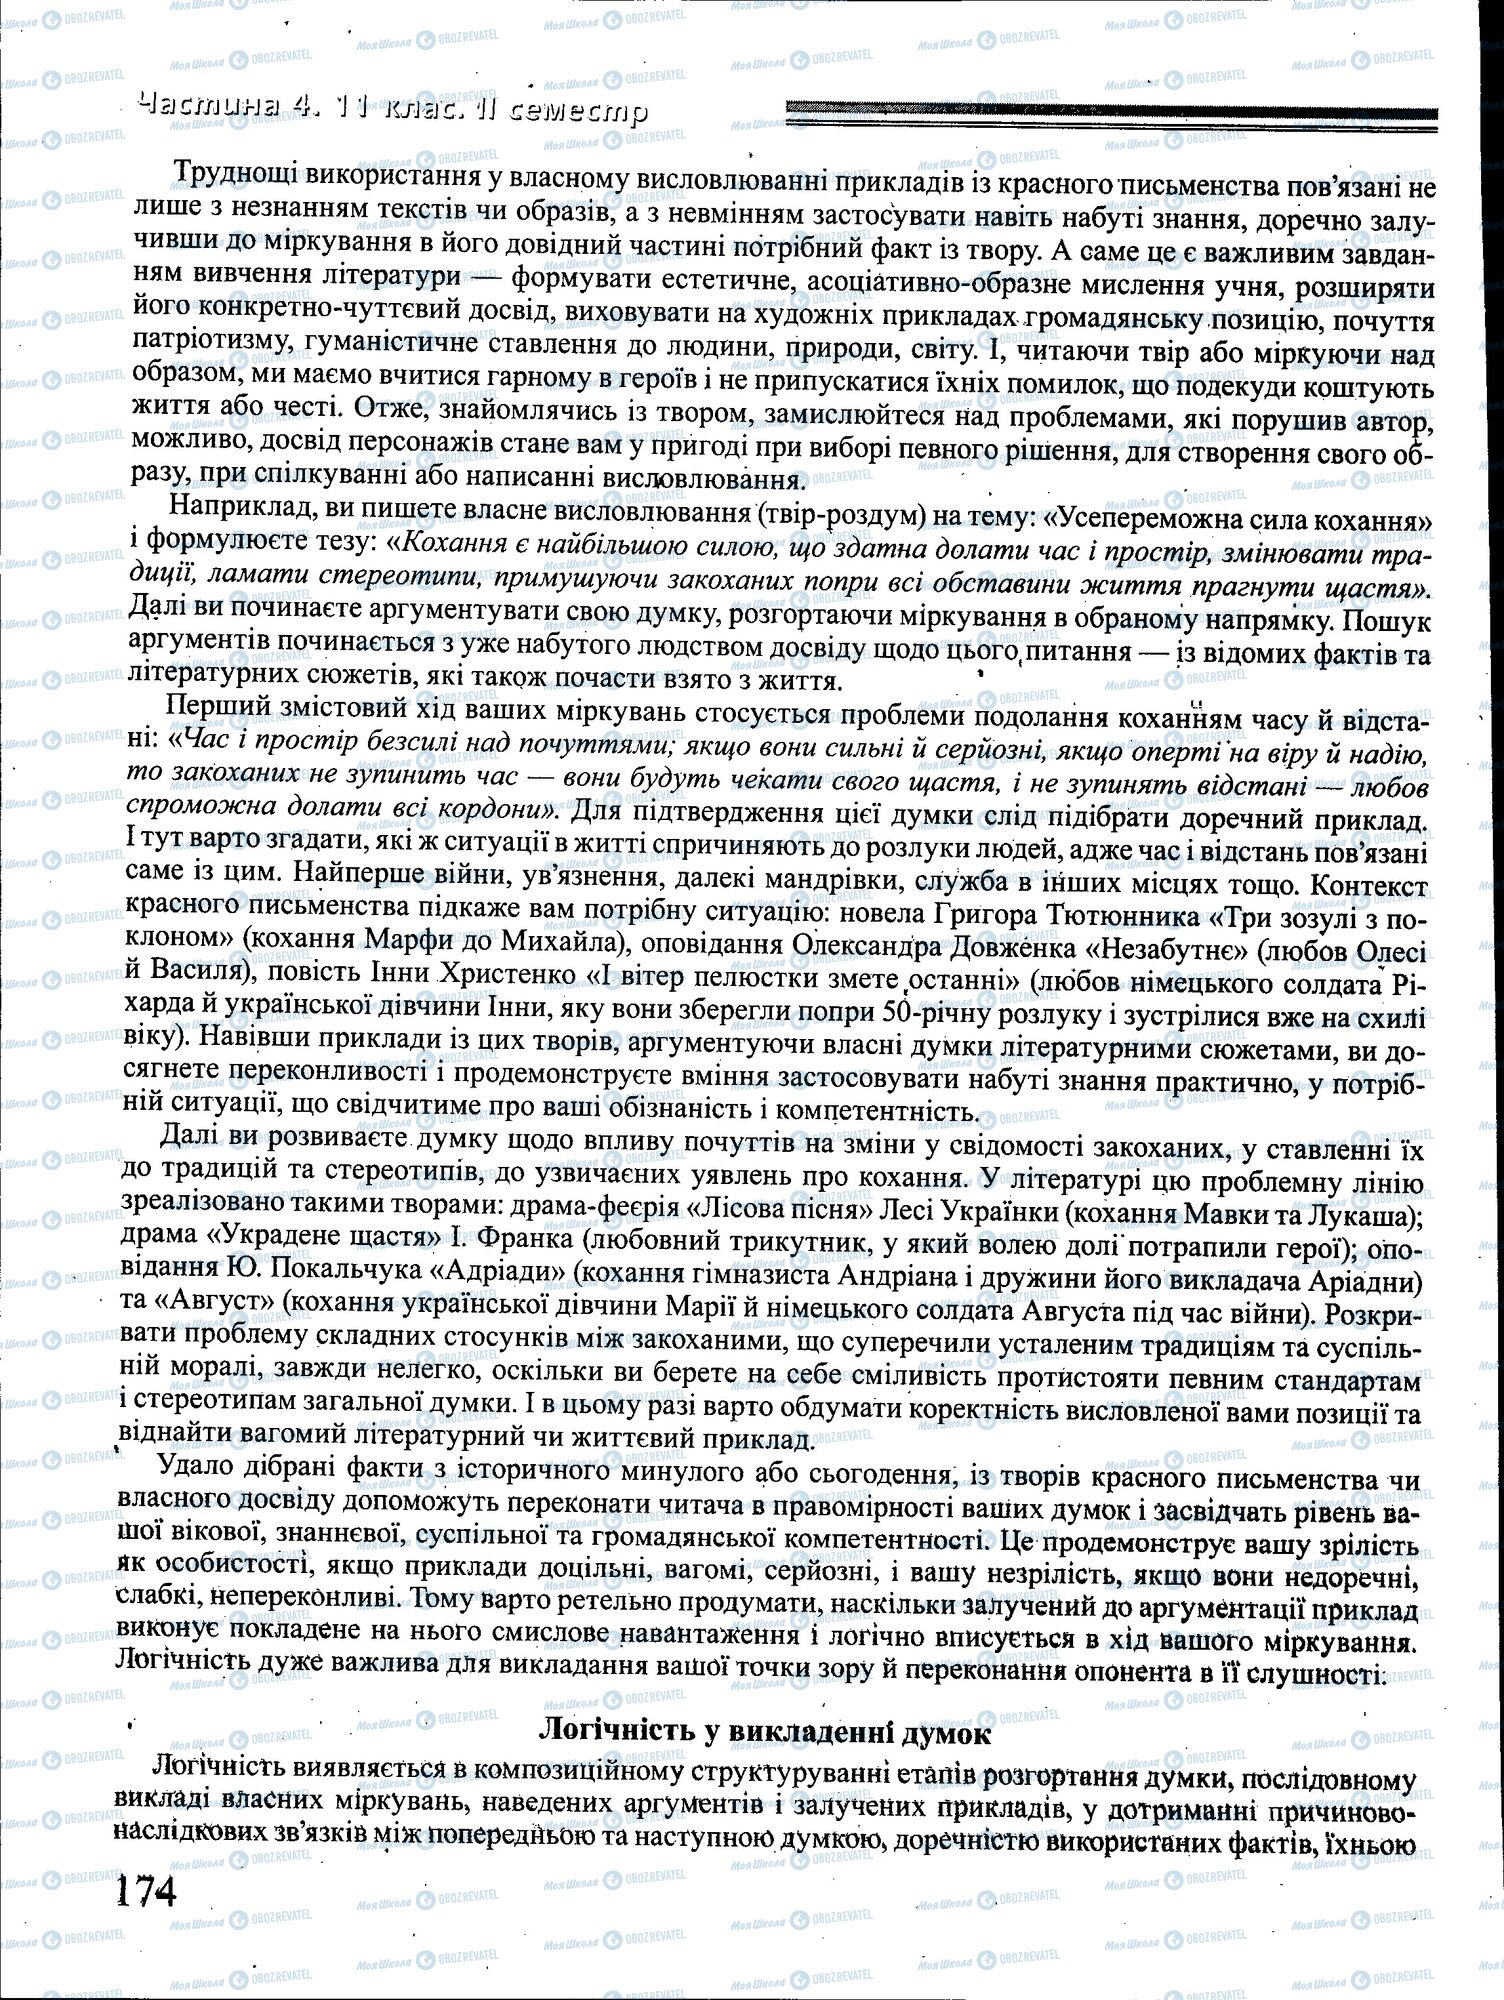 ДПА Укр мова 4 класс страница 174